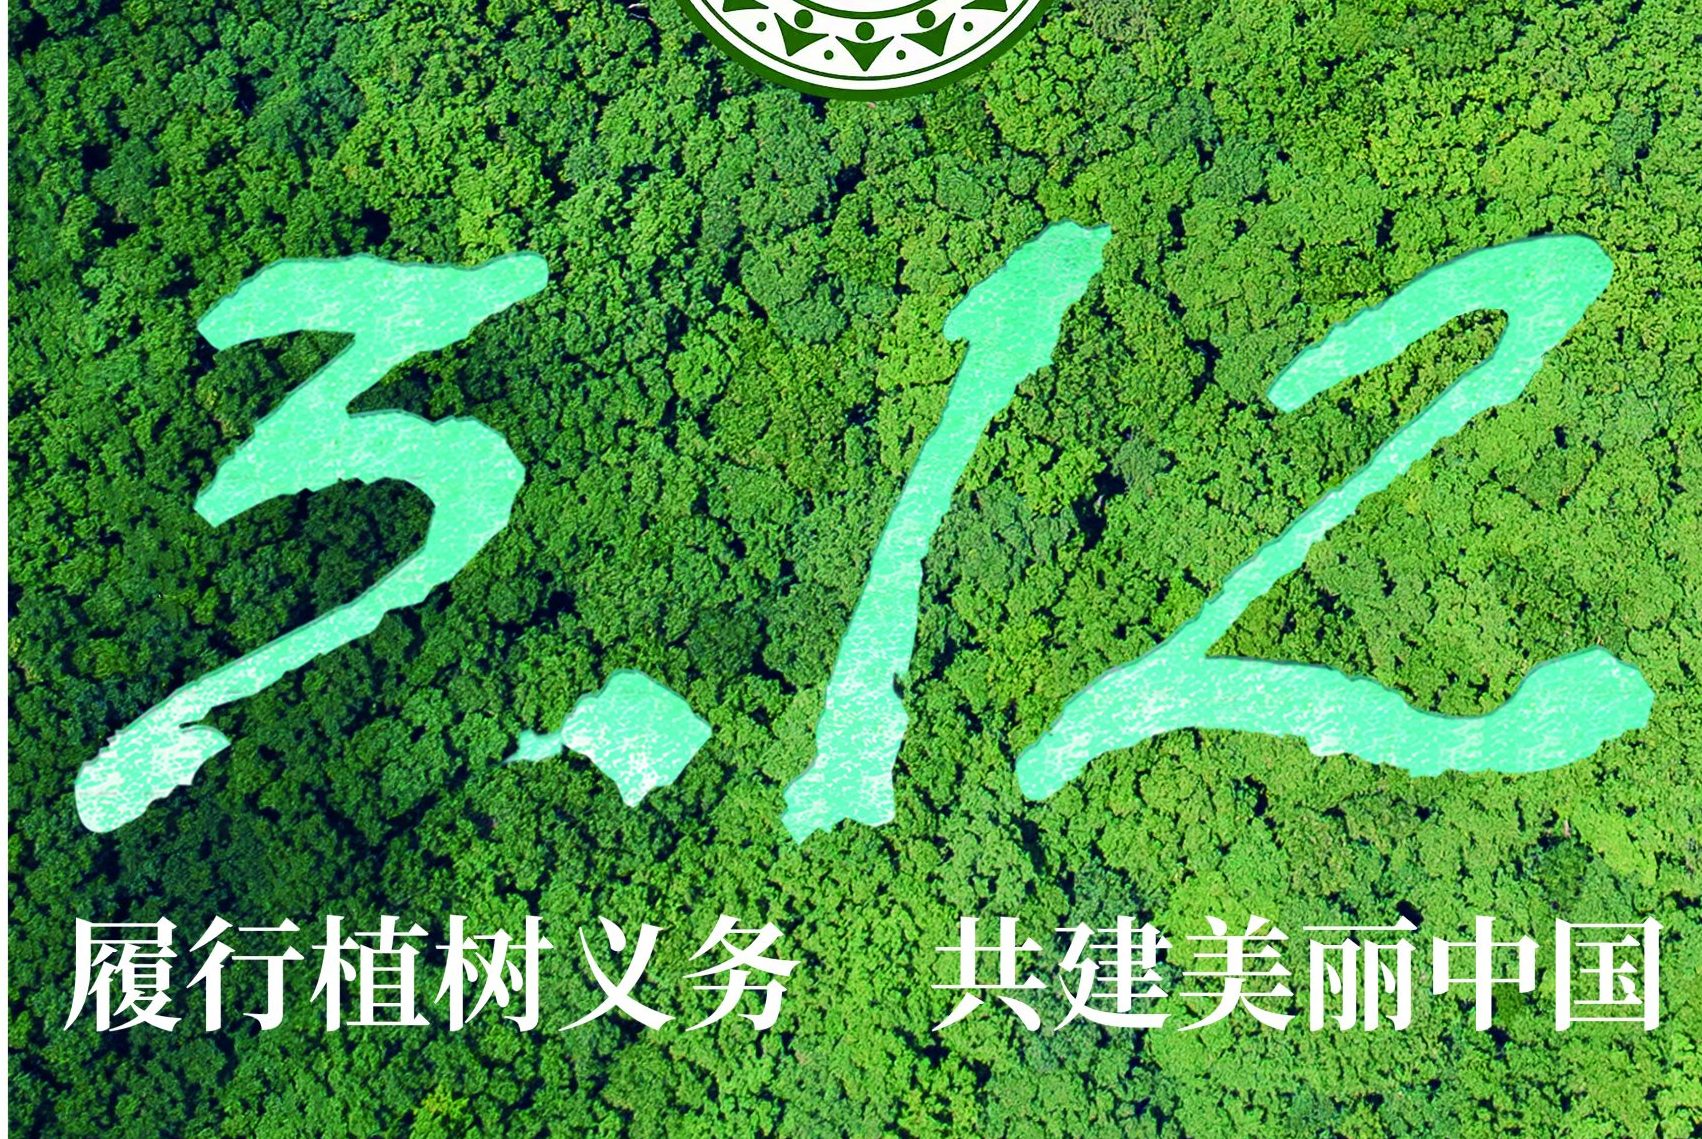 履行植树义务 共建美丽中国 ——2022年全民义务植树倡议书-地理信息云